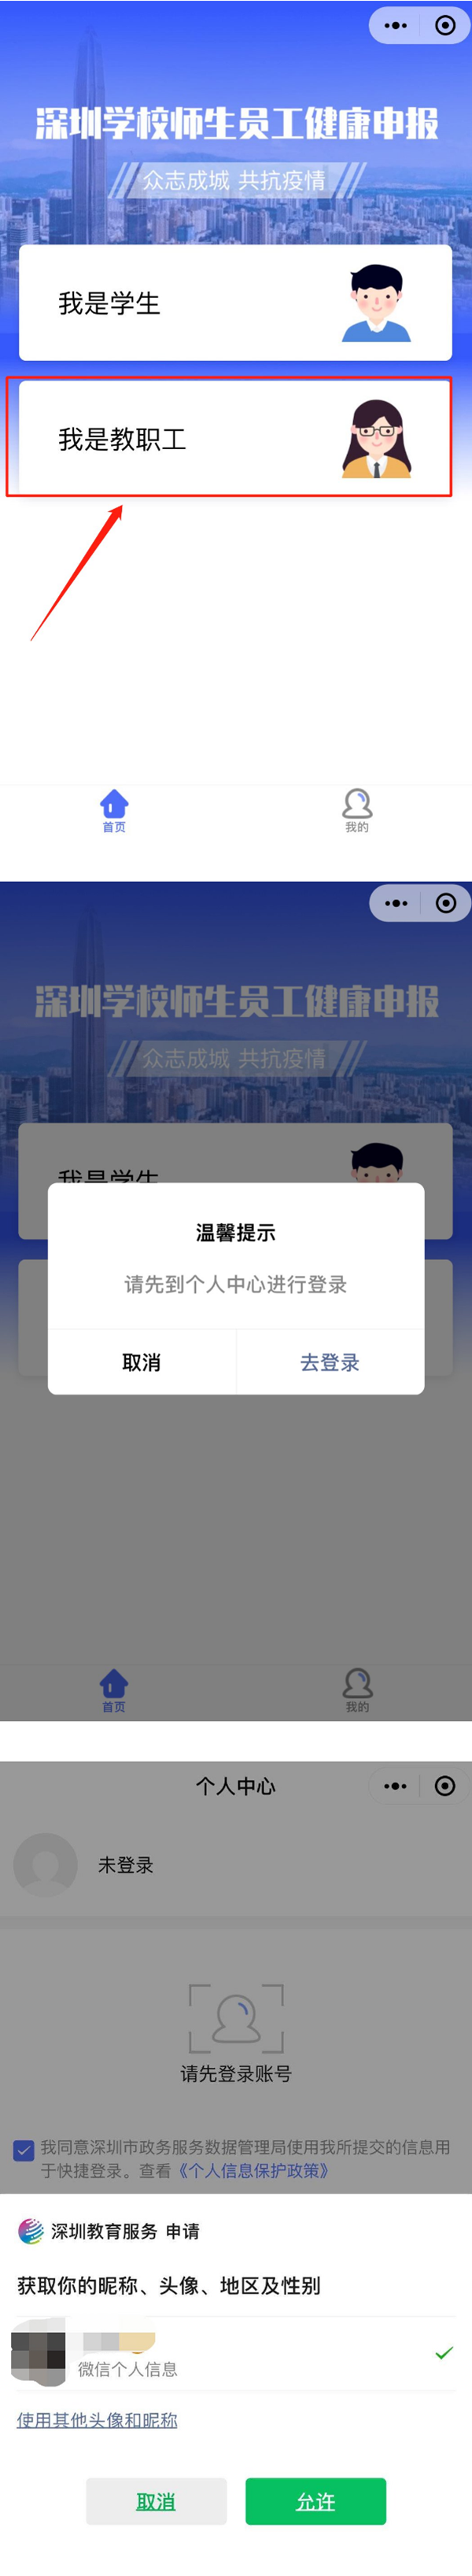 深圳高三师生返校健康信息申报指引